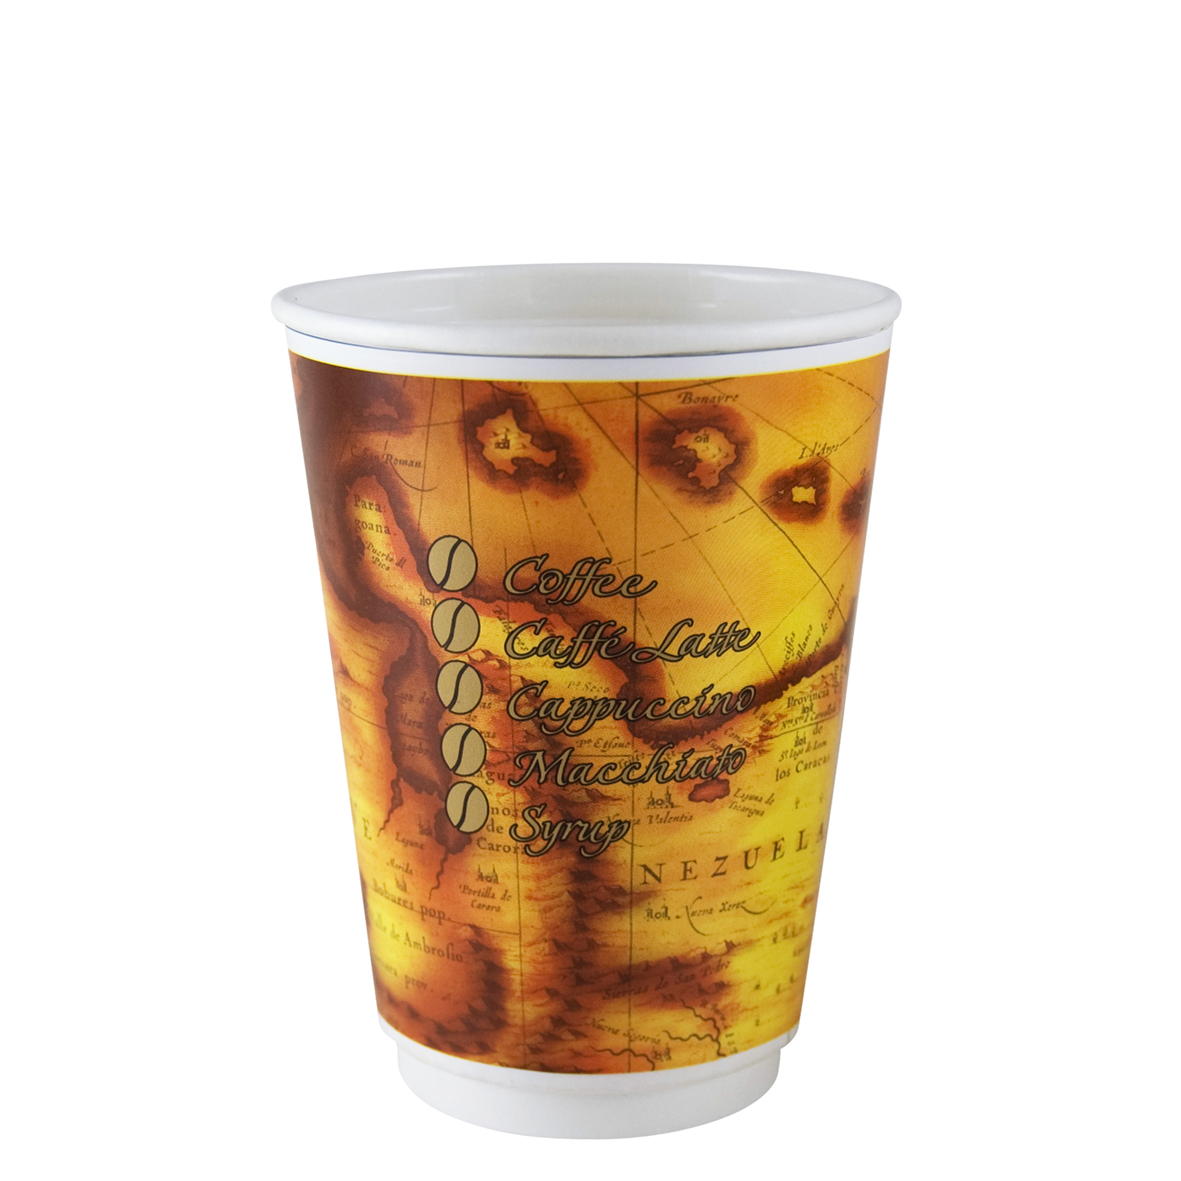 DWE Paper Cup Encarta, 12 oz.